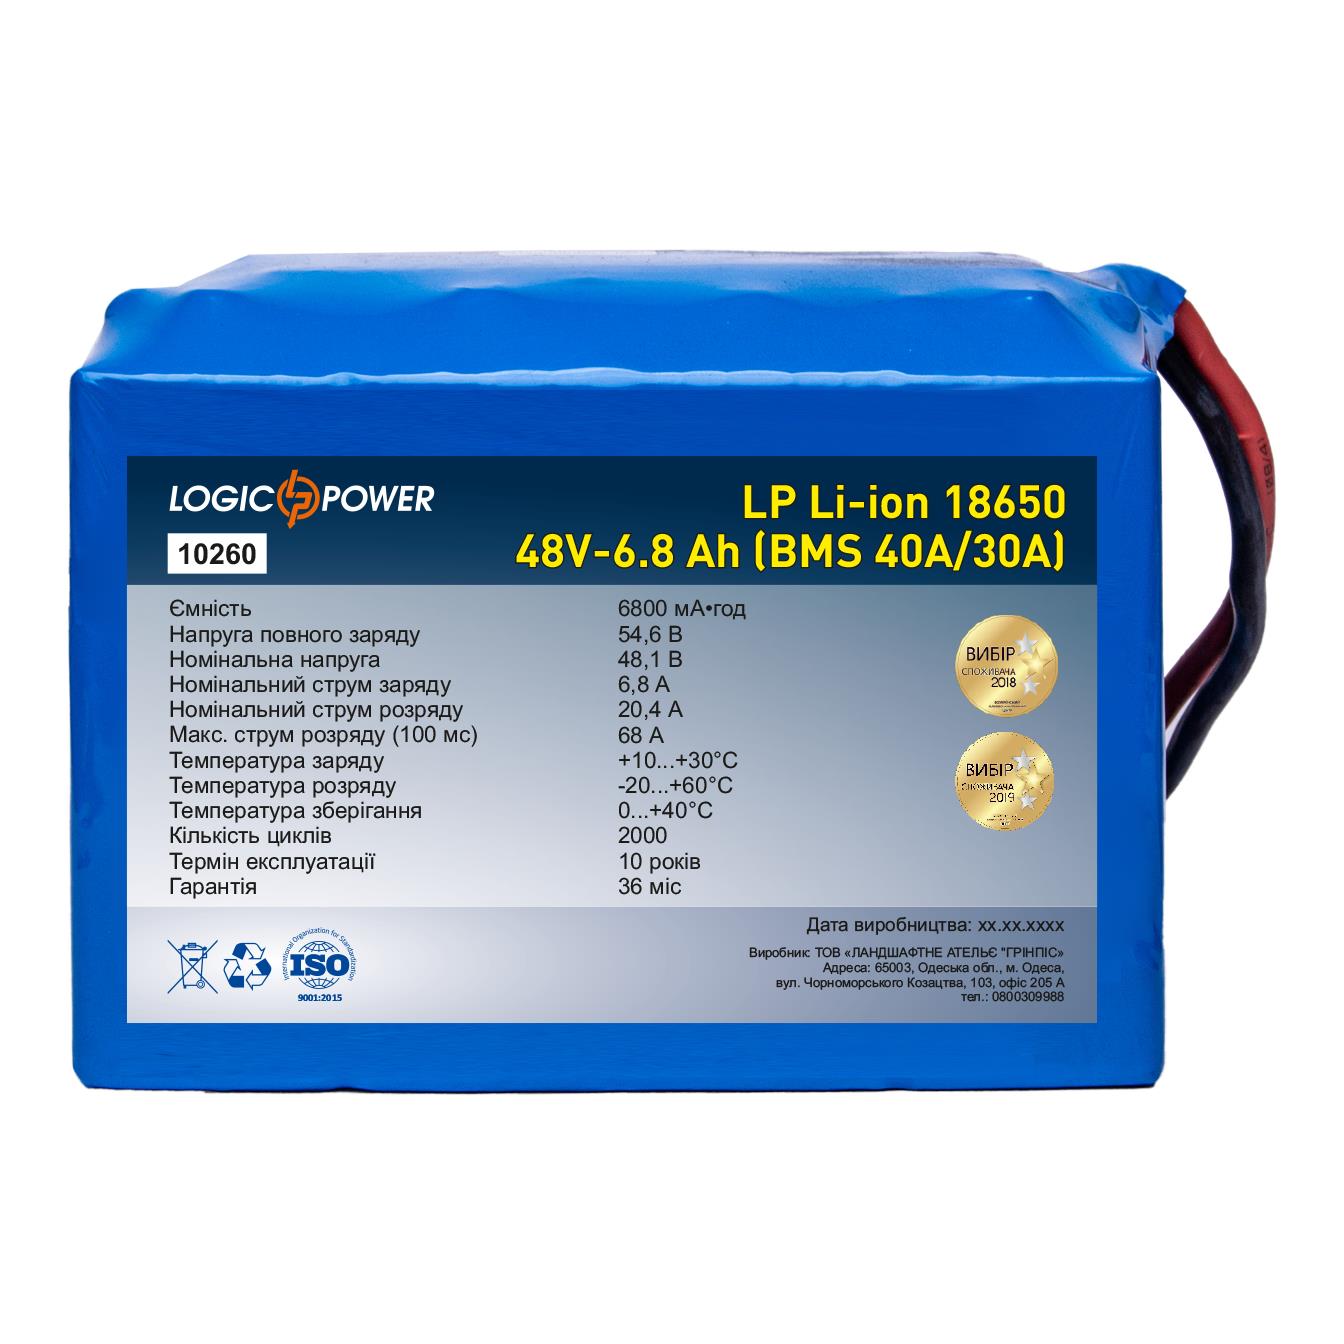 Аккумулятор 48 В LogicPower LP Li-ion 18650 48V - 6.8 Ah (BMS 40A/30А) (10260)